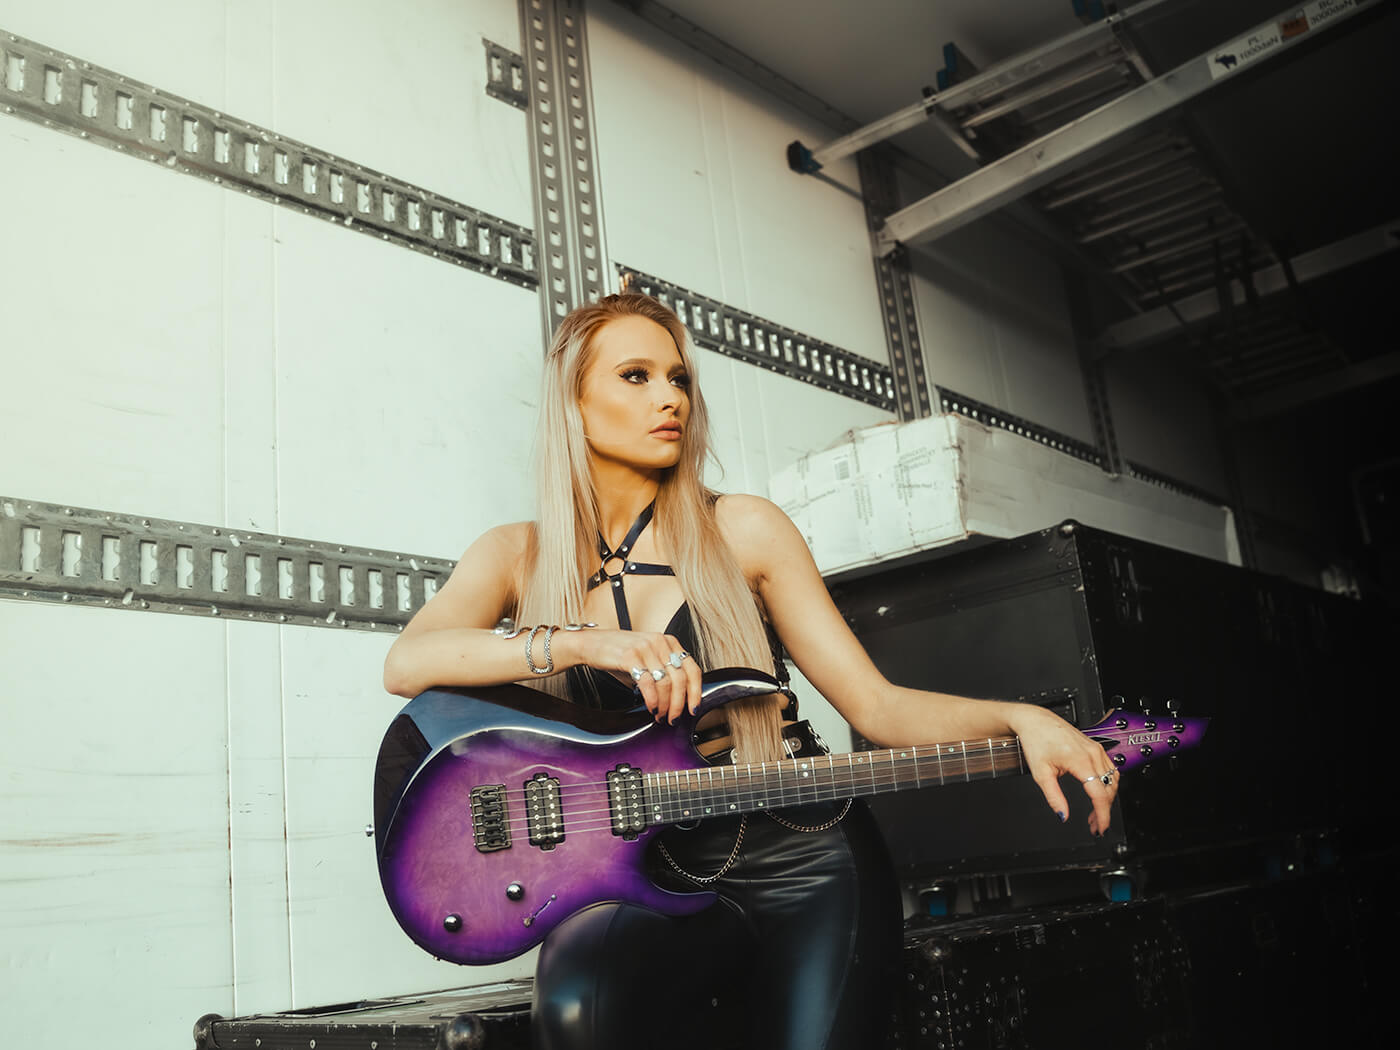 Sophie Lloyd with Kiesel guitar